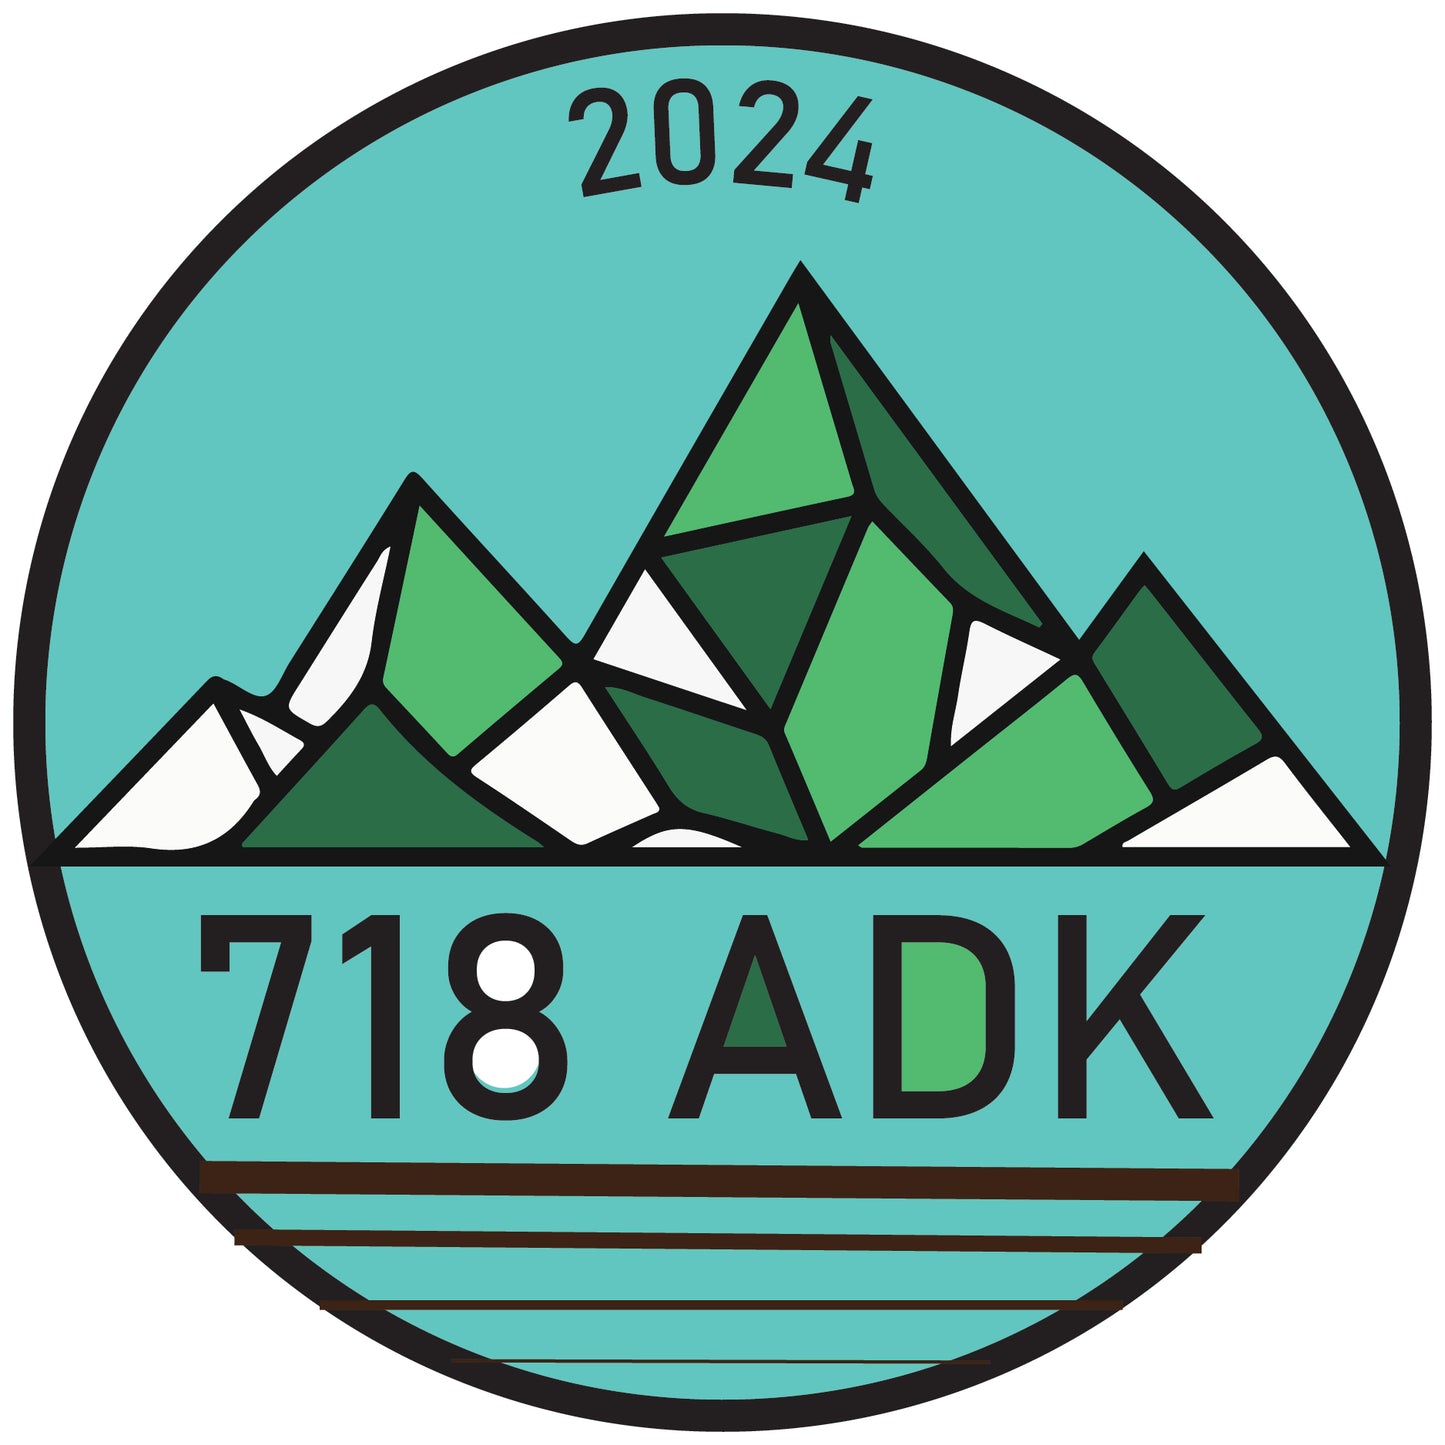 2024 Adirondacks Tour (Aug 10-17)